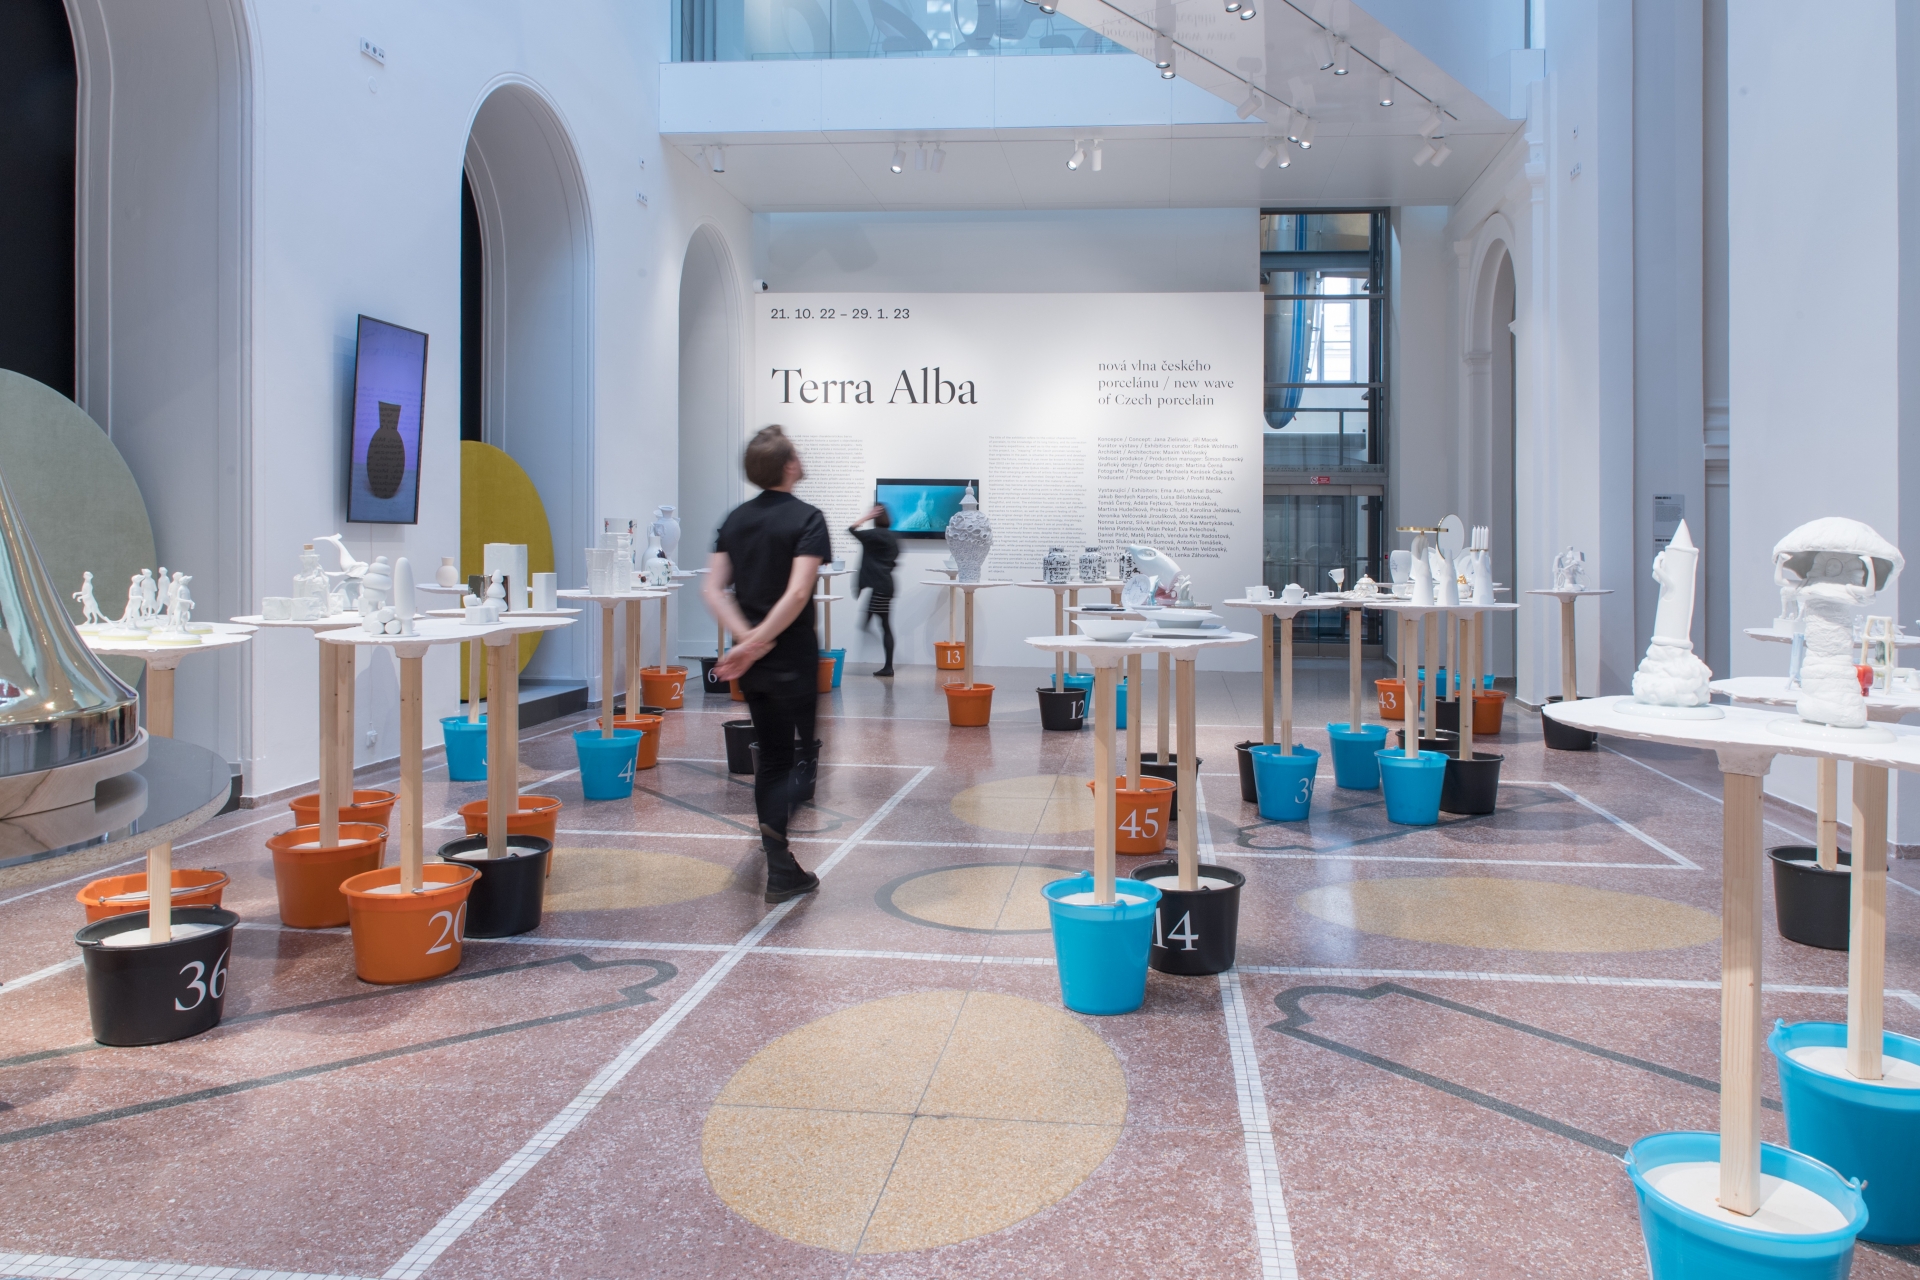 Výstava Terra Alba pokračuje v Uměleckoprůmyslovém muzeu v Brně